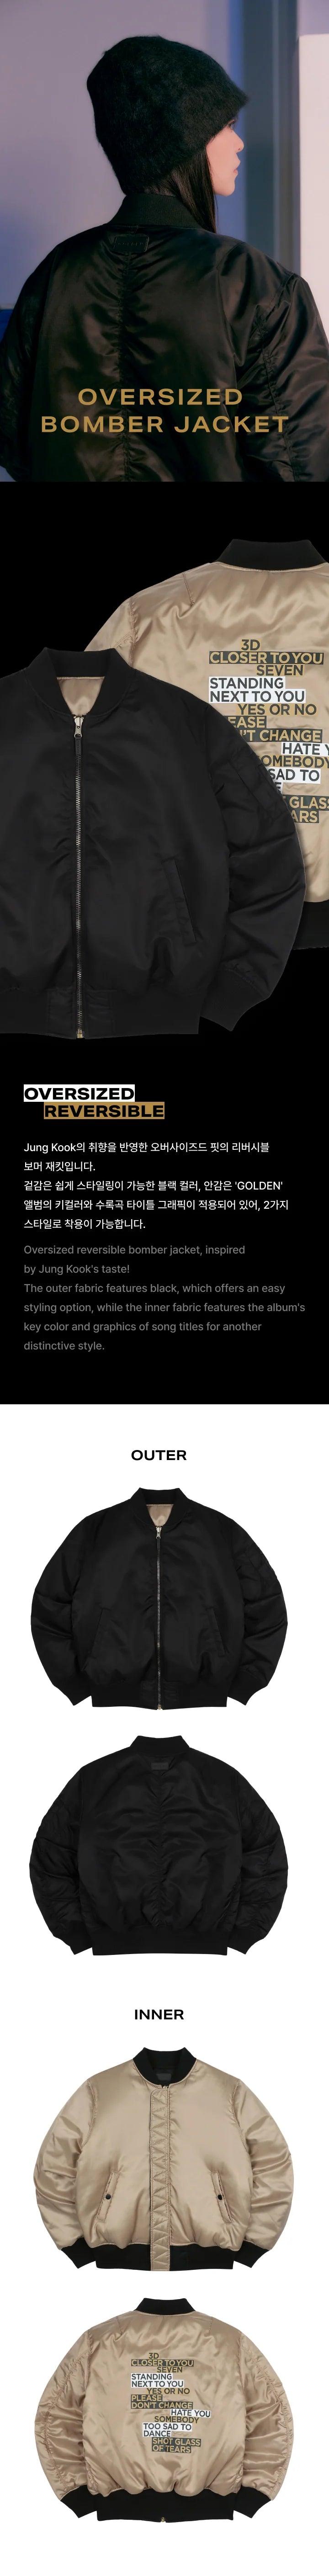 JUNGKOOK (BTS) - [GOLDEN] MD Oversized Bomber Jacket - KAEPJJANG SHOP (캡짱 숍)